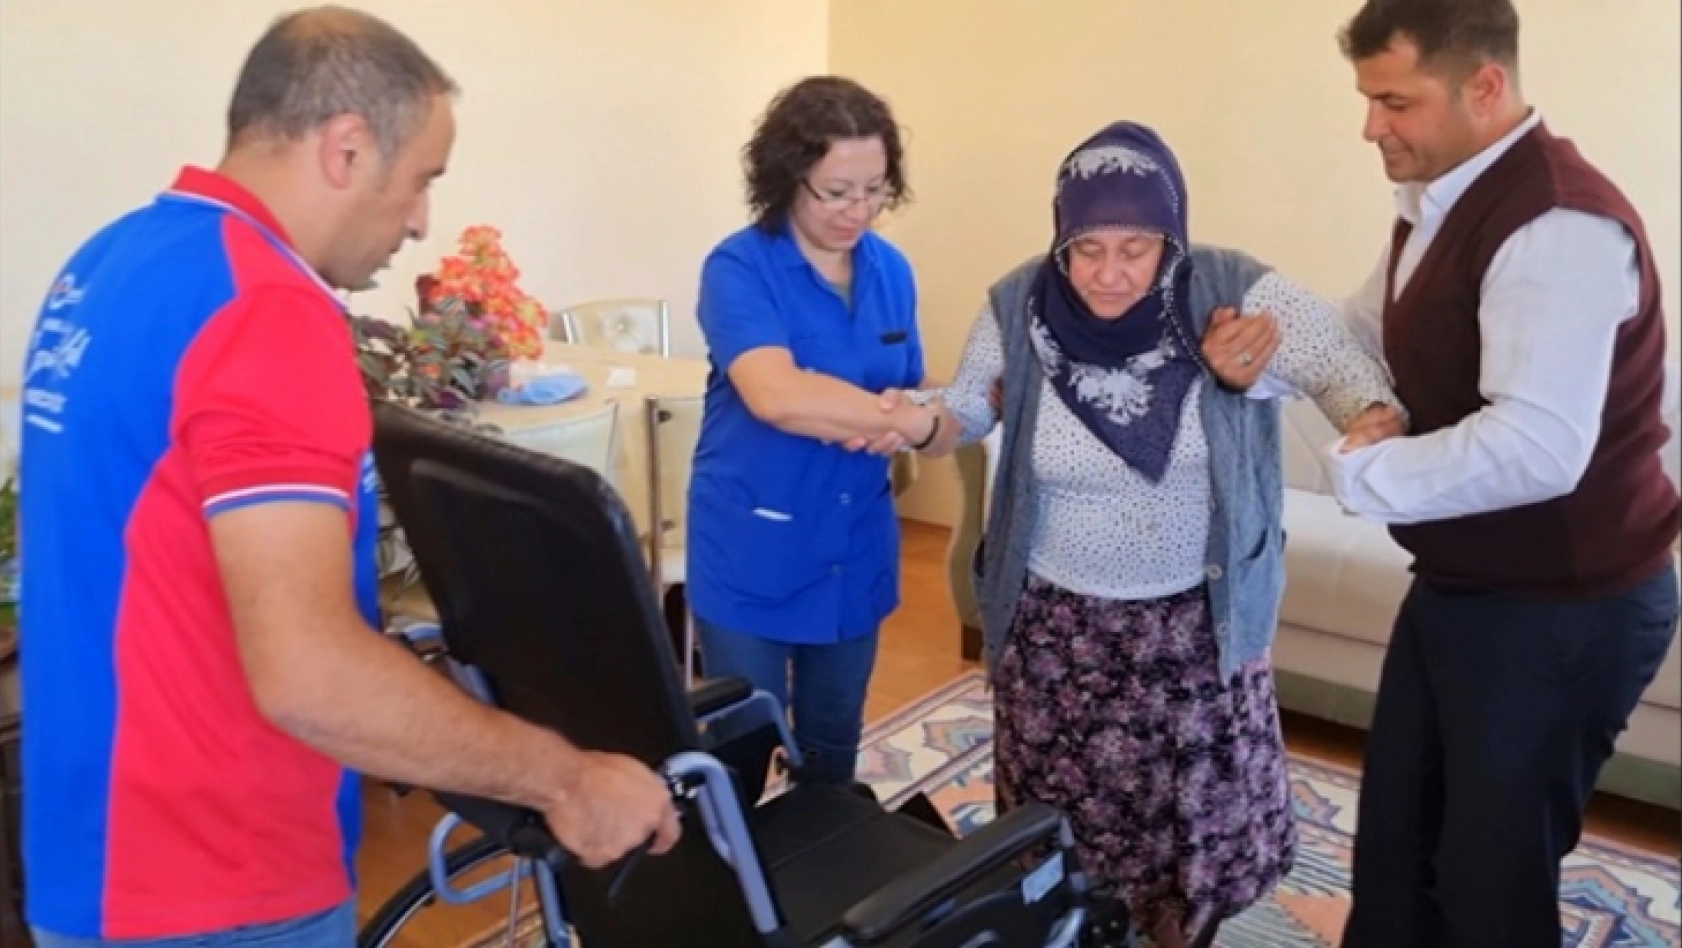 Başkan Gürkan, Engelli vatandaşın tekerlekli sandalye talebini geri çevirmedi.